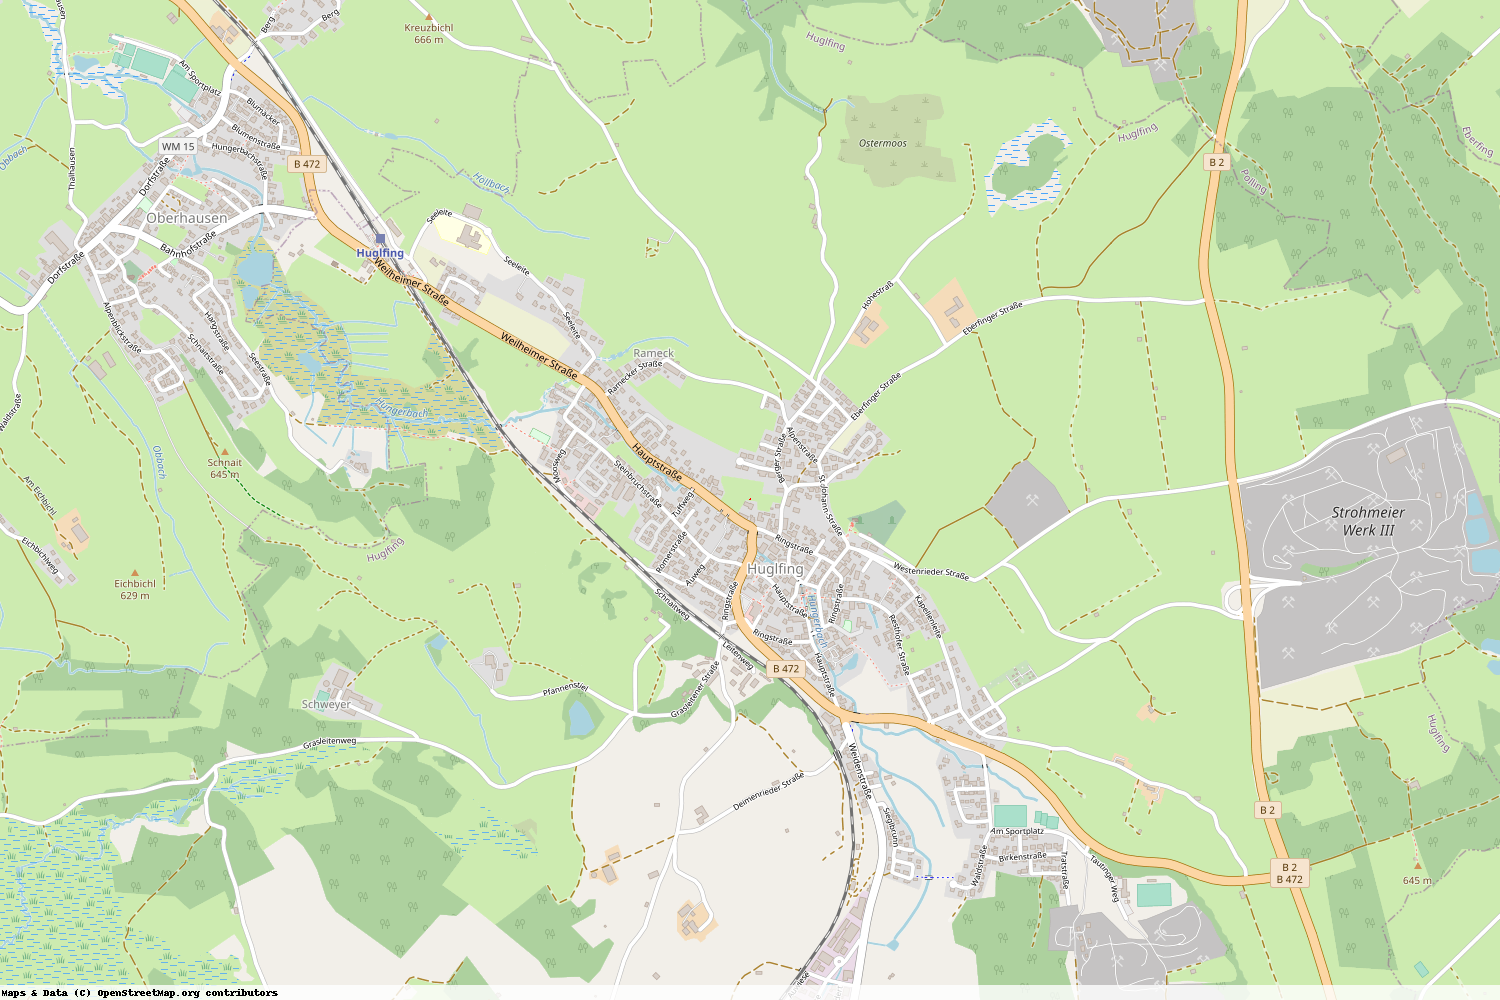 Ist gerade Stromausfall in Bayern - Weilheim-Schongau - Huglfing?